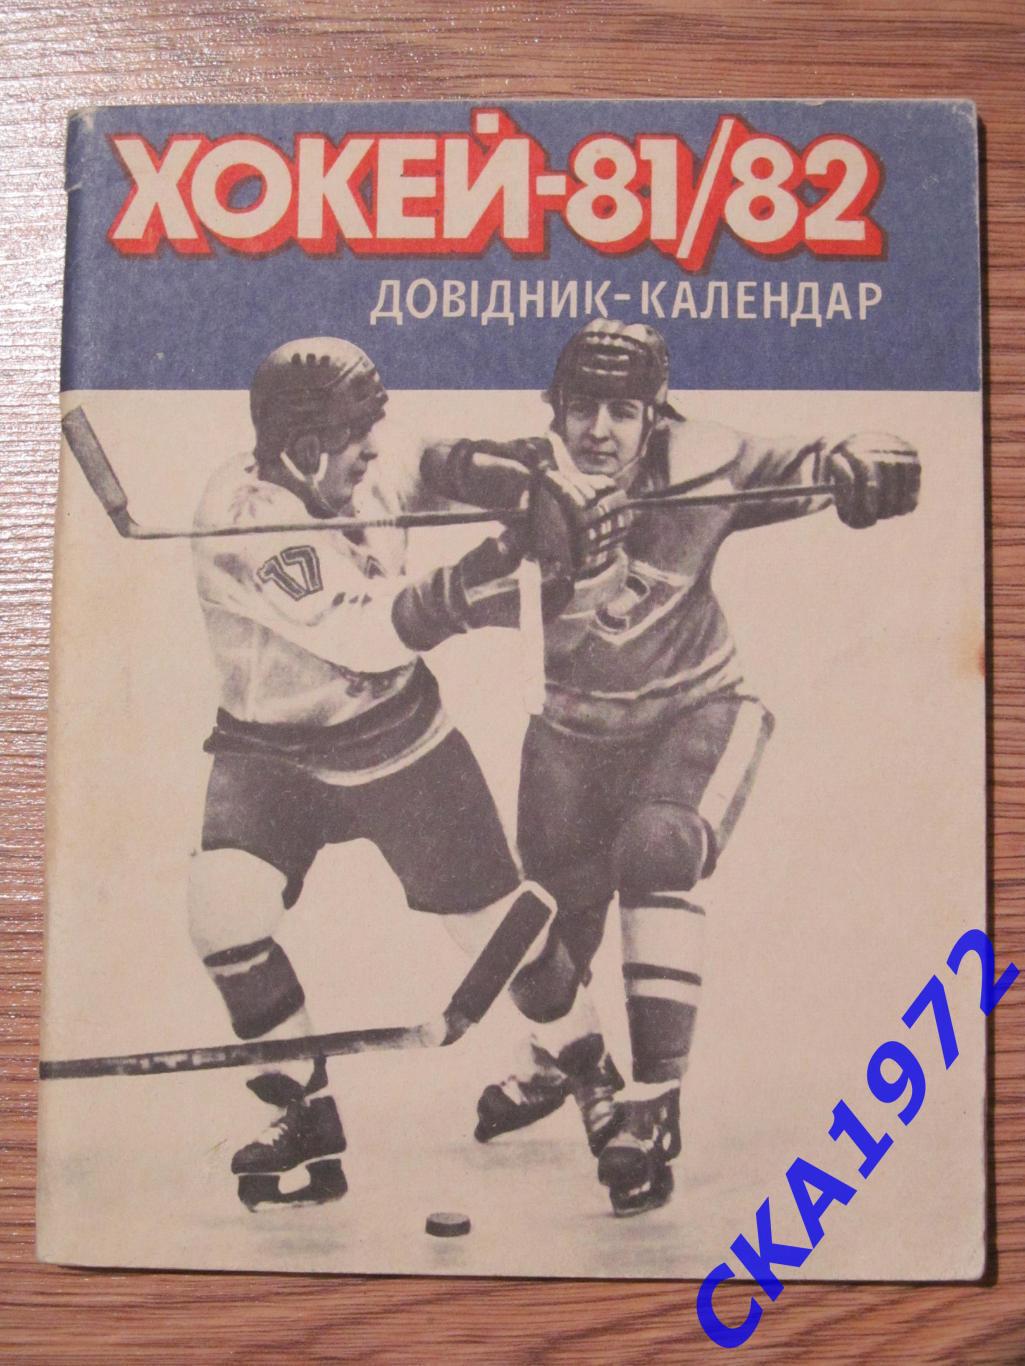 календарь-справочник Киев 1981/82